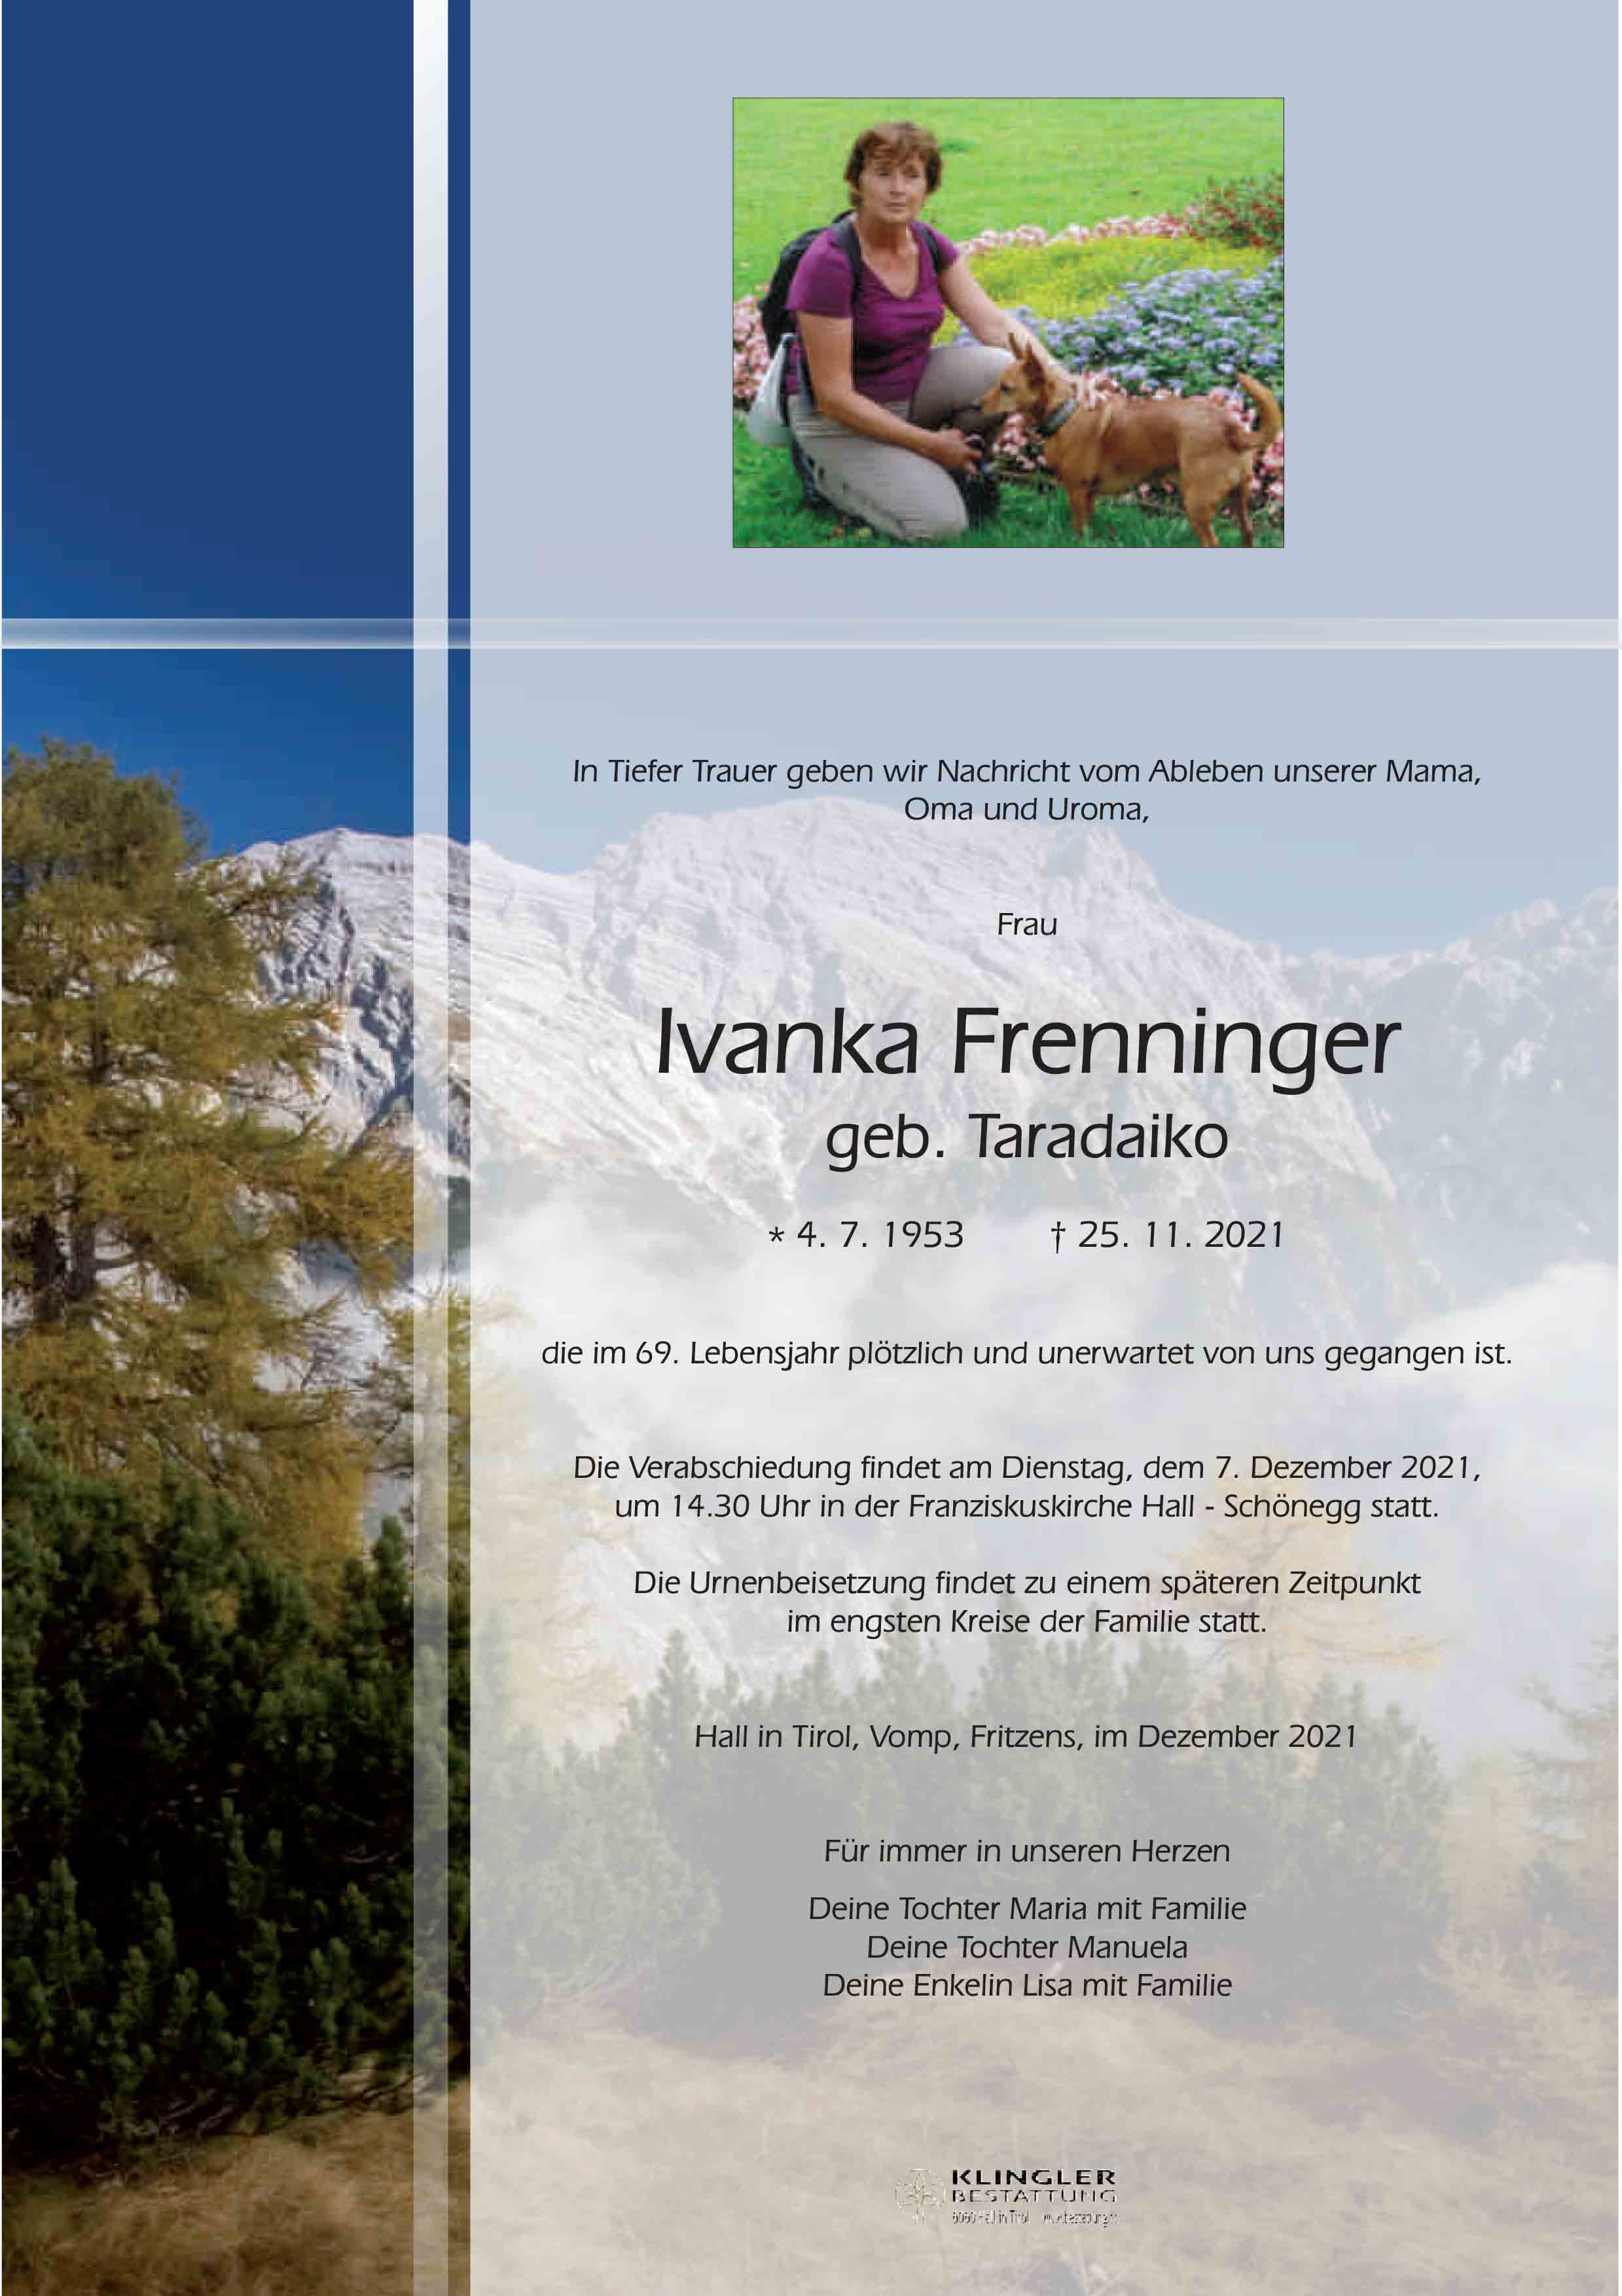 Ivanka Frenninger